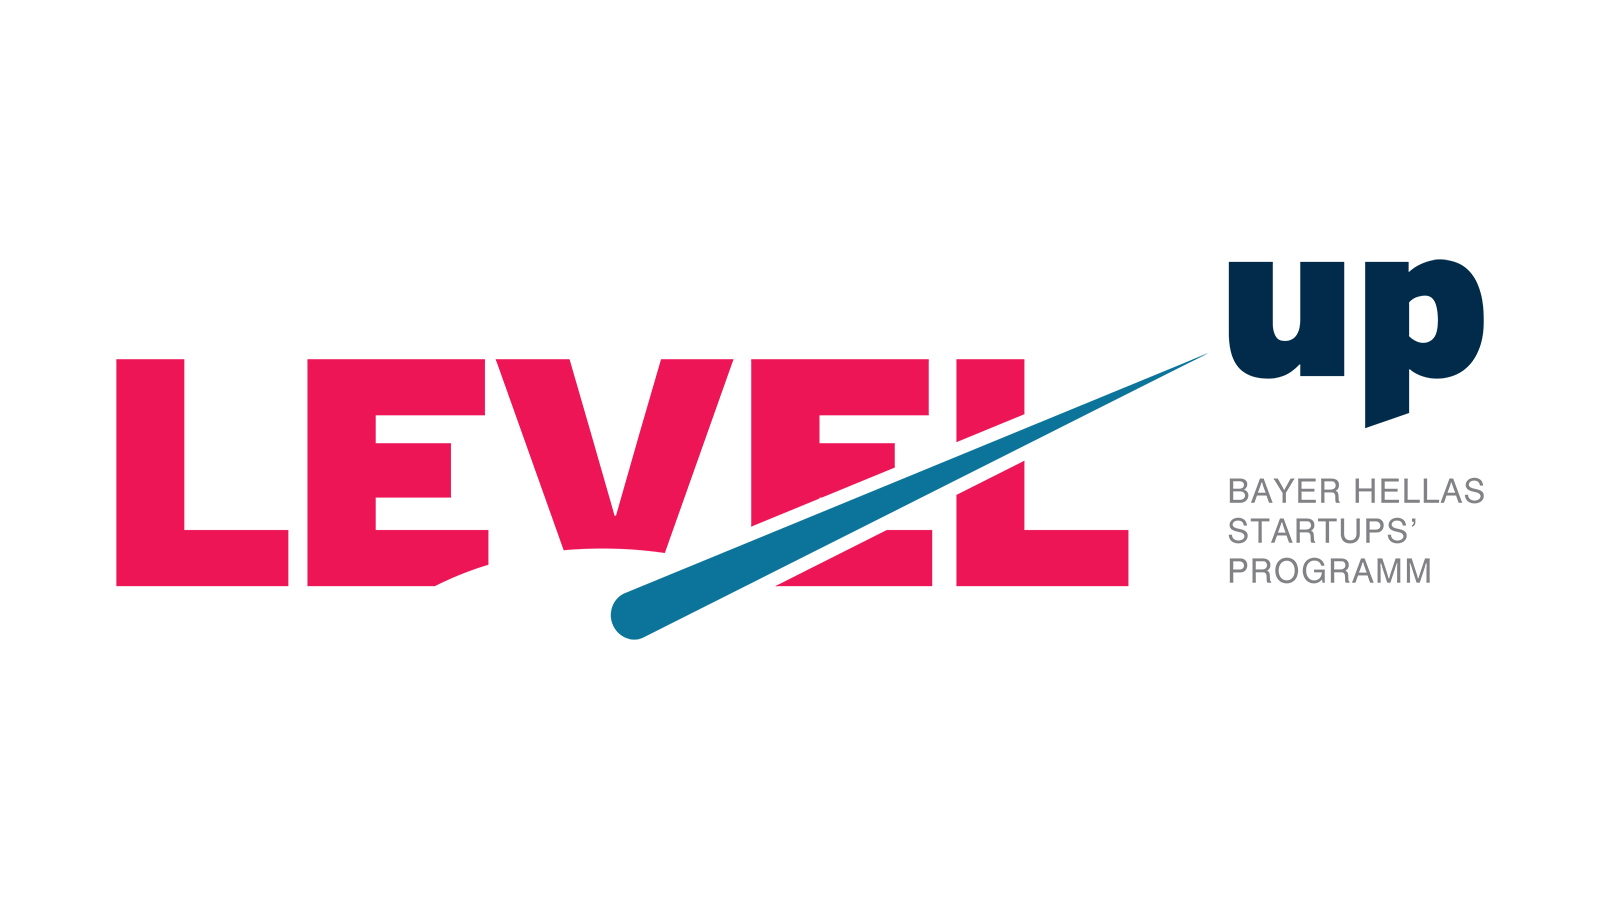 , Η Bayer Ελλάς ανακοινώνει το πρόγραμμα Level-up για νεοφυείς επιχειρήσεις